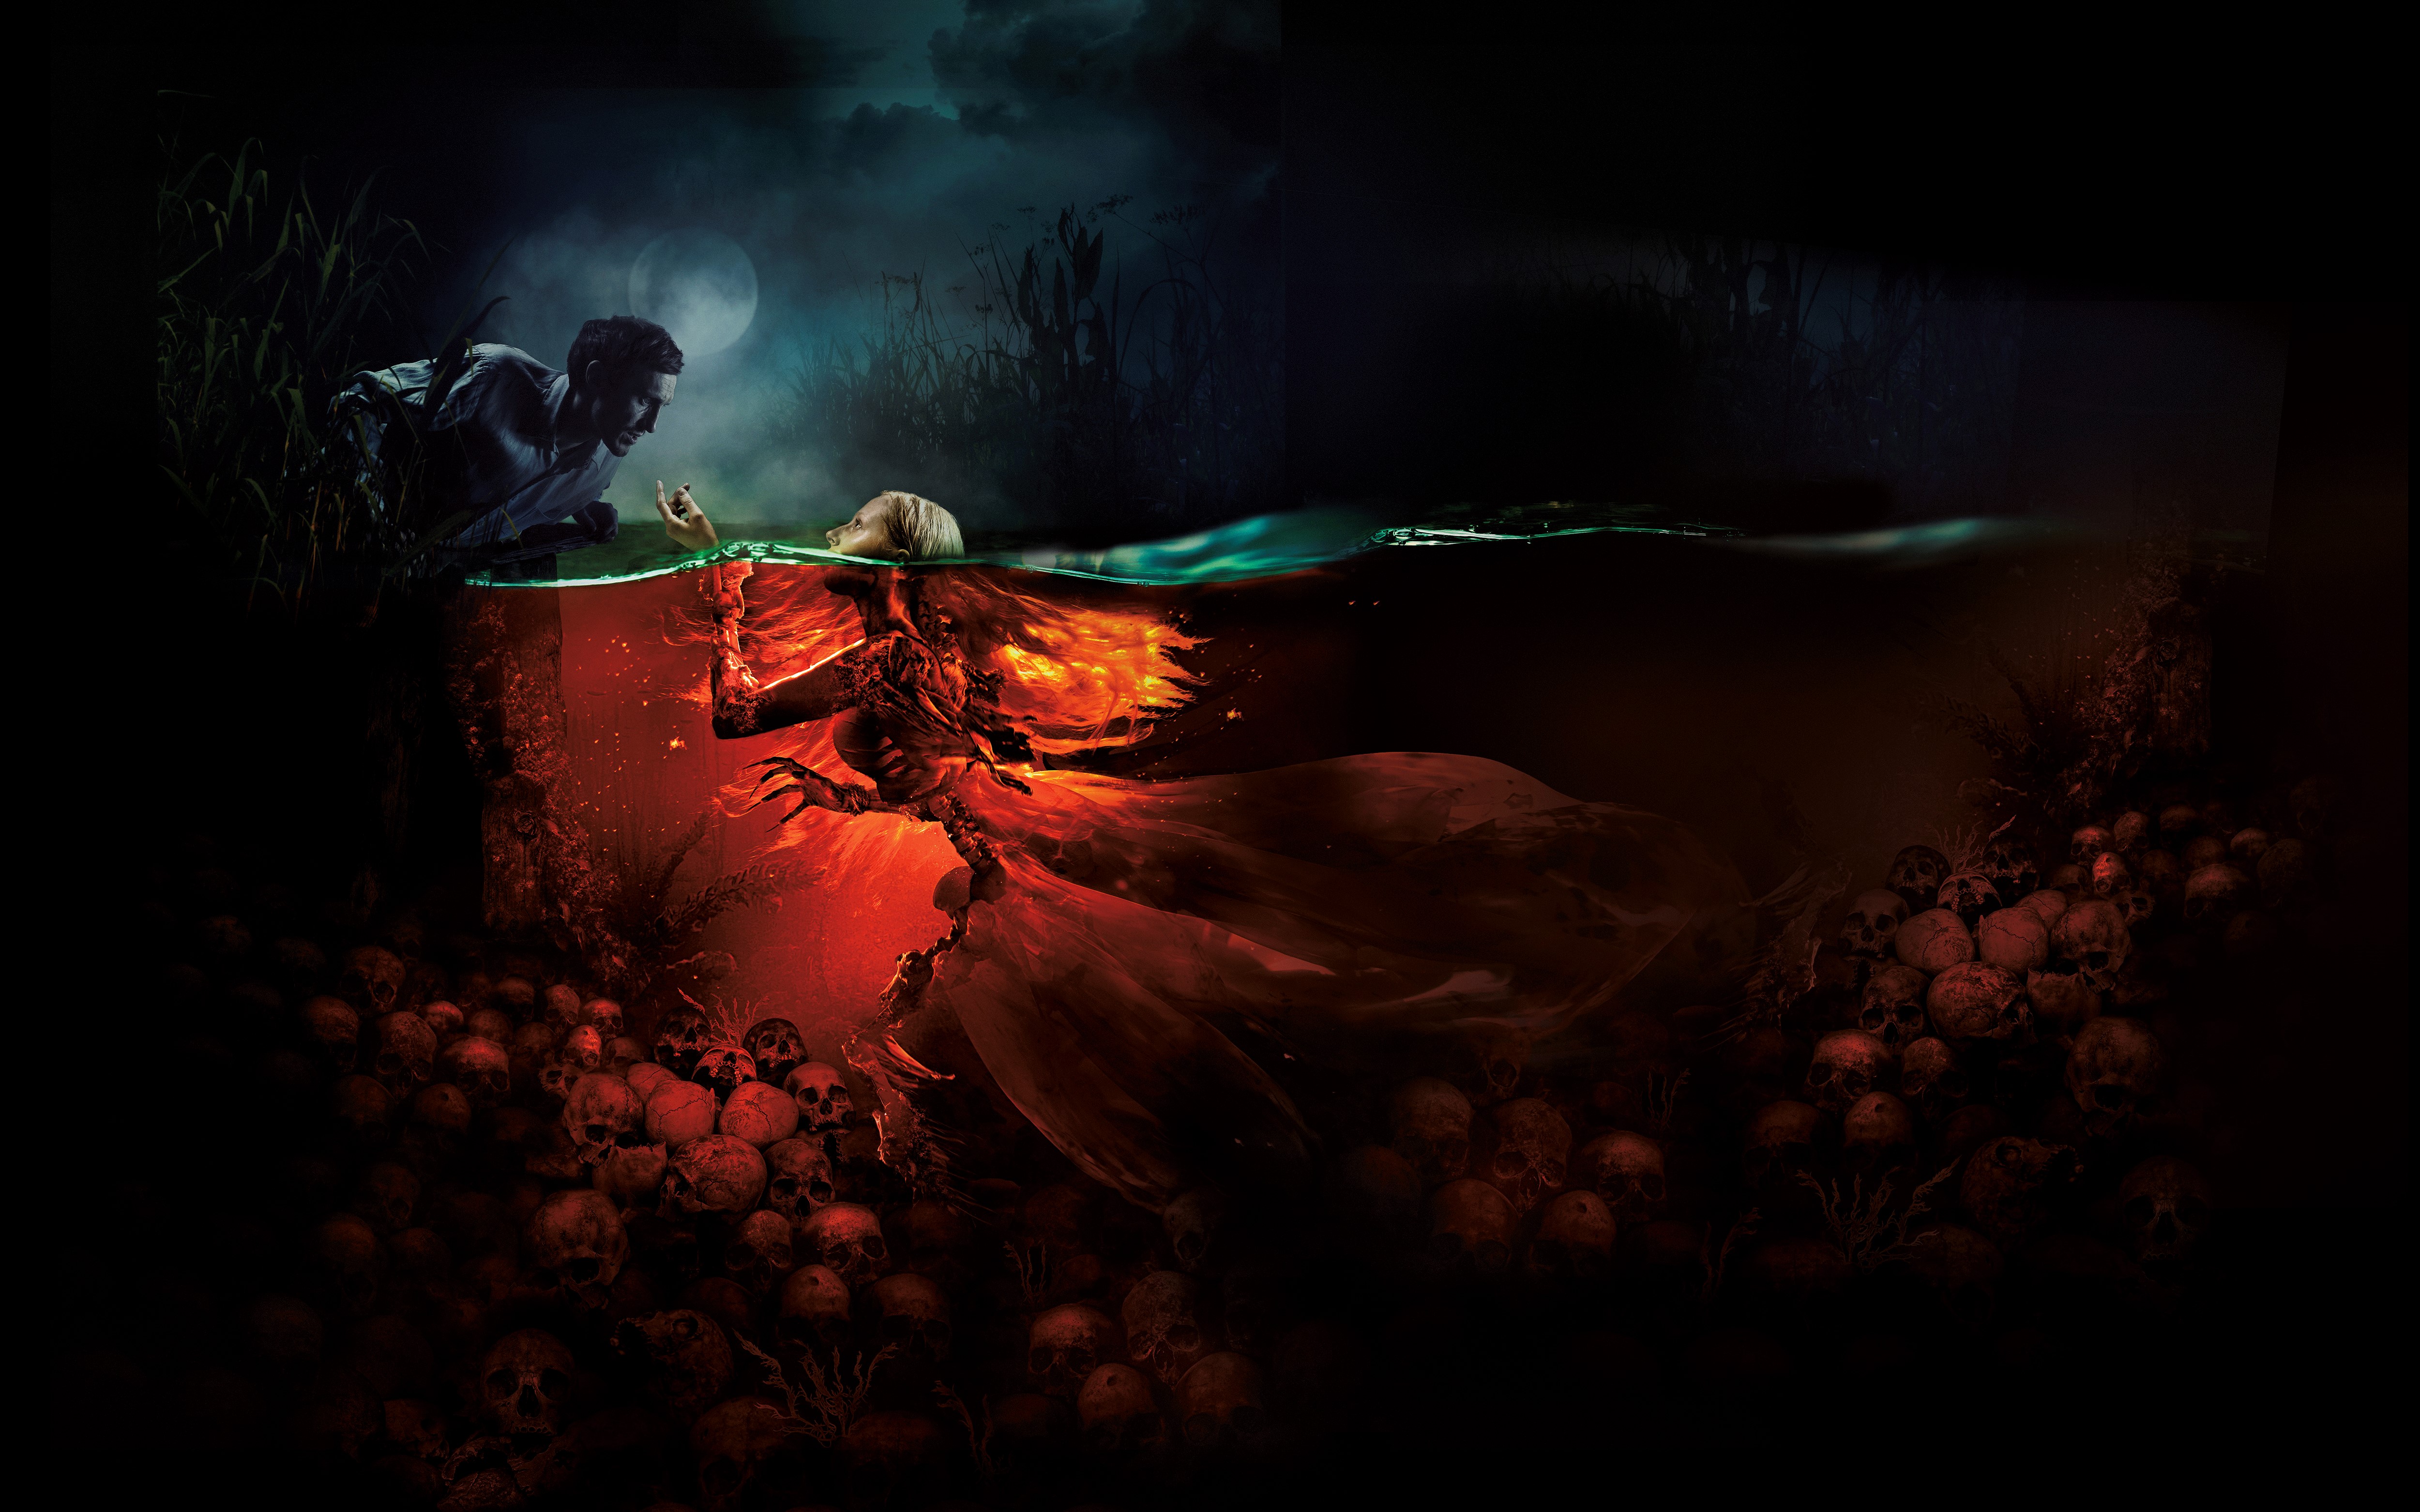 Descarga gratuita de fondo de pantalla para móvil de Fantasía, Oscuro, Sirena, Películas, Cráneos, Mermaid: The Lake Of The Dead.